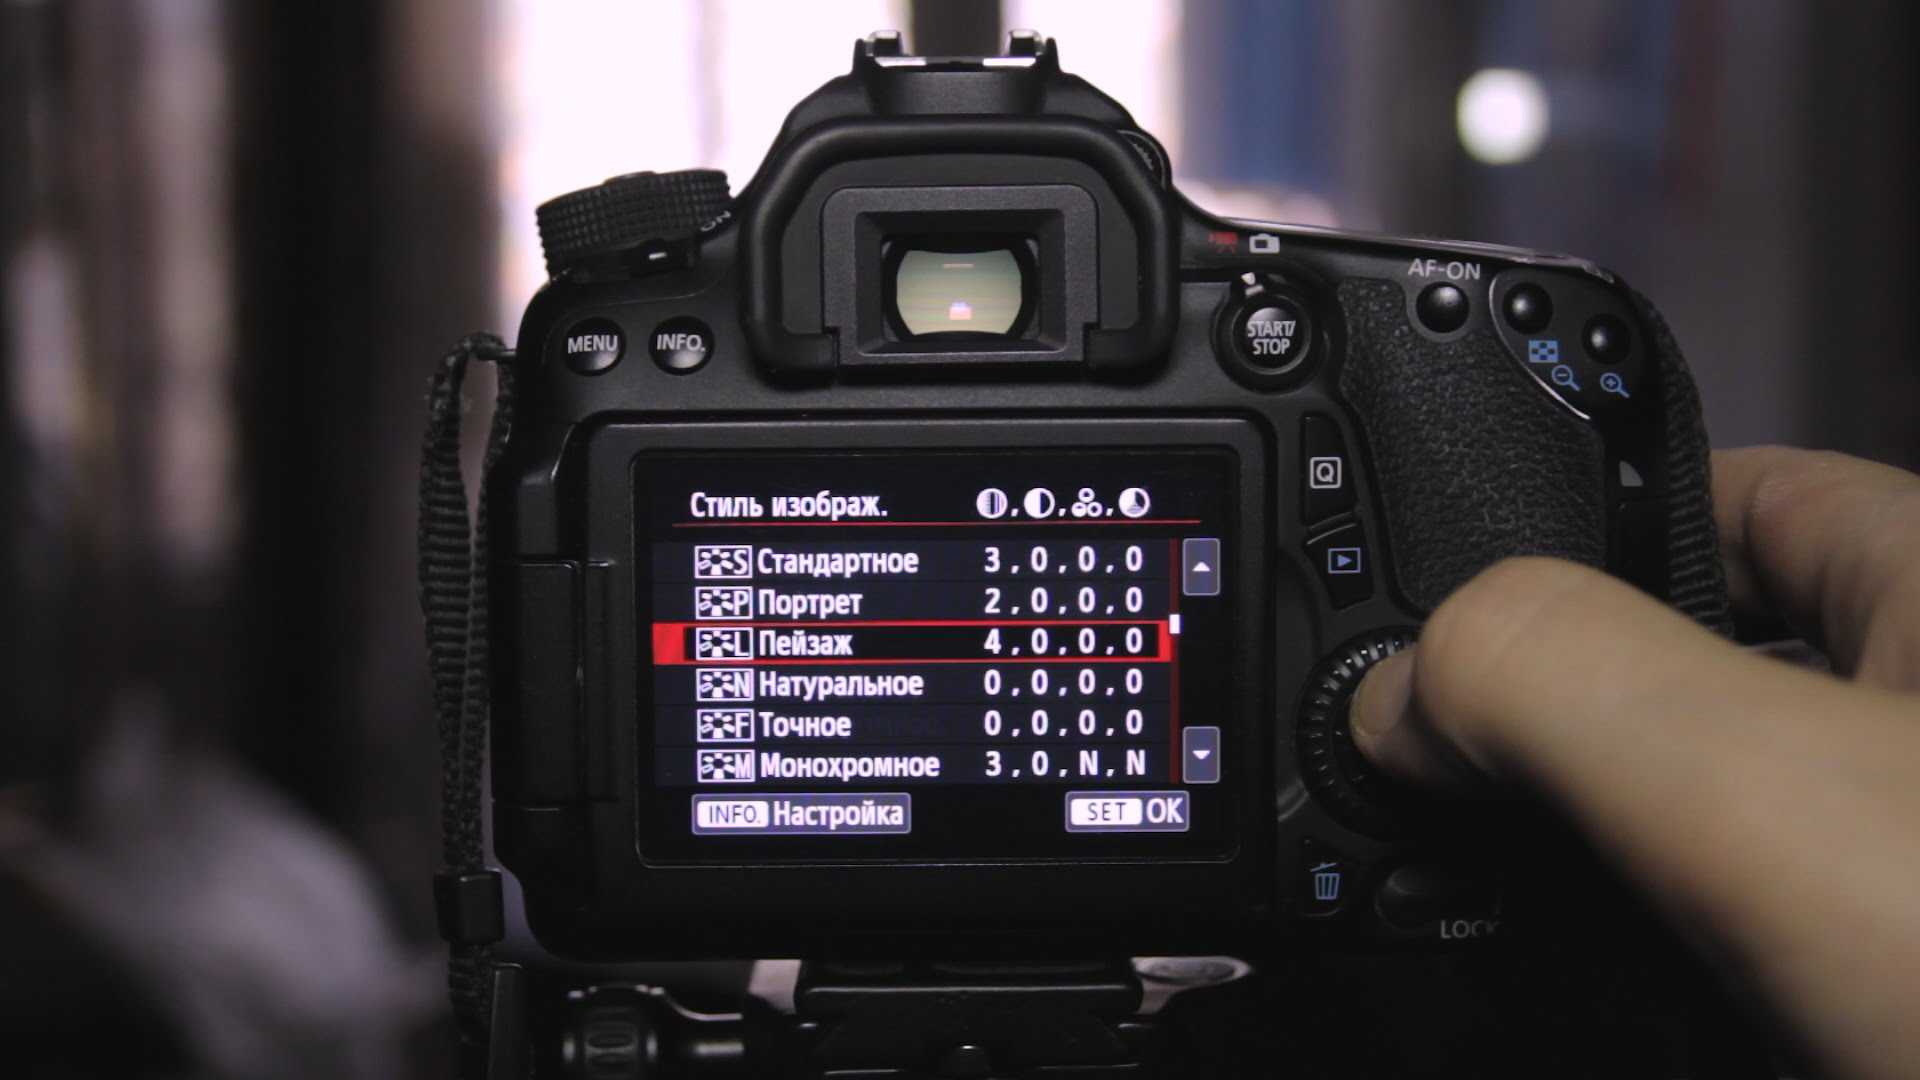 Пять важных настроек фотокамеры, и как их использовать. урок фотографии